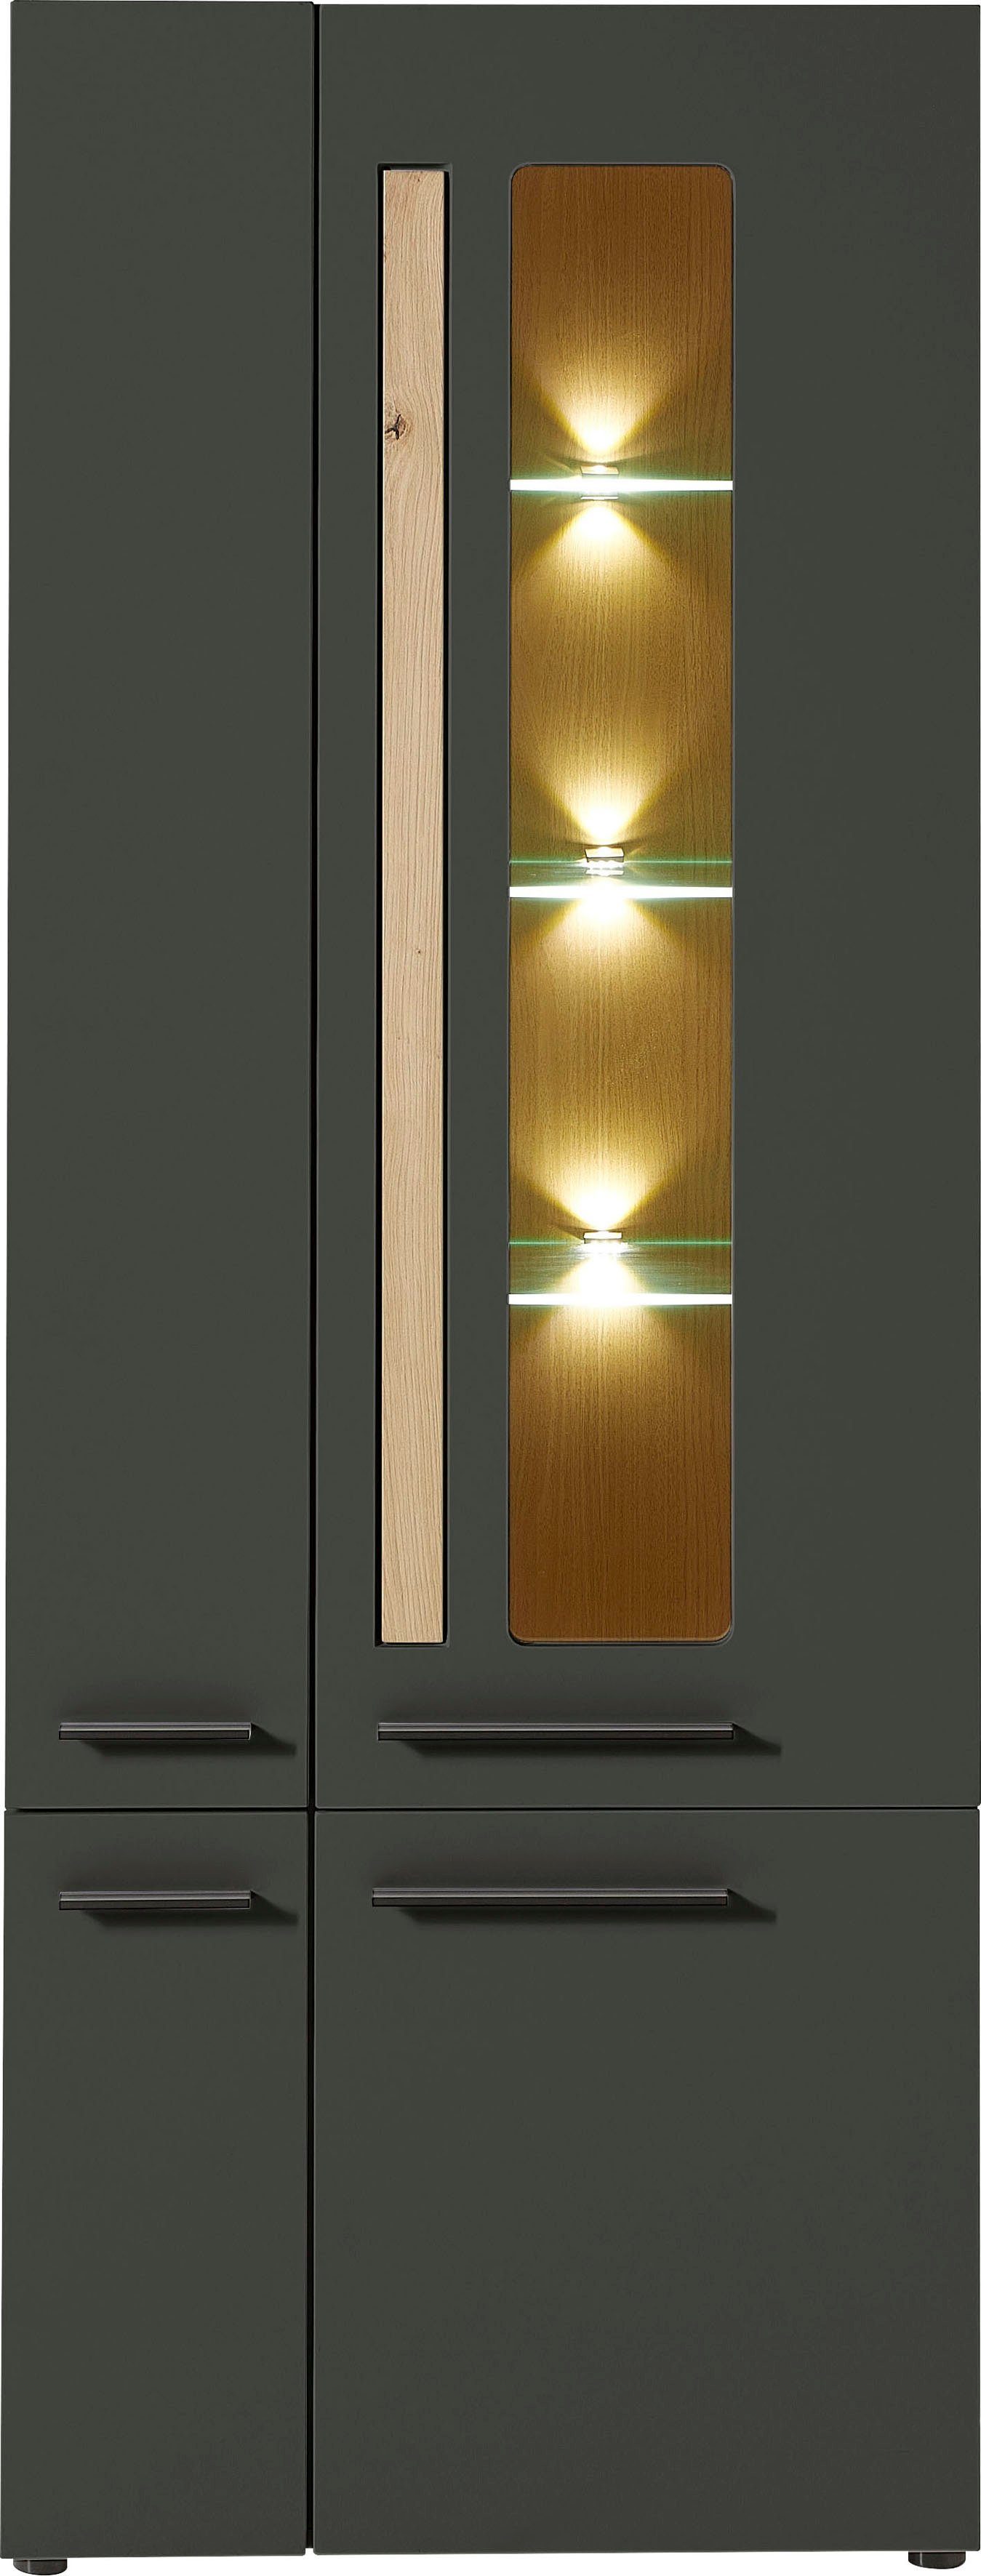 Innostyle Standvitrine Loft Two mit Soft-Close-Funktion, inkl. Beleuchtung,  umfangreicher Typenplan in 2 Farbausführungen